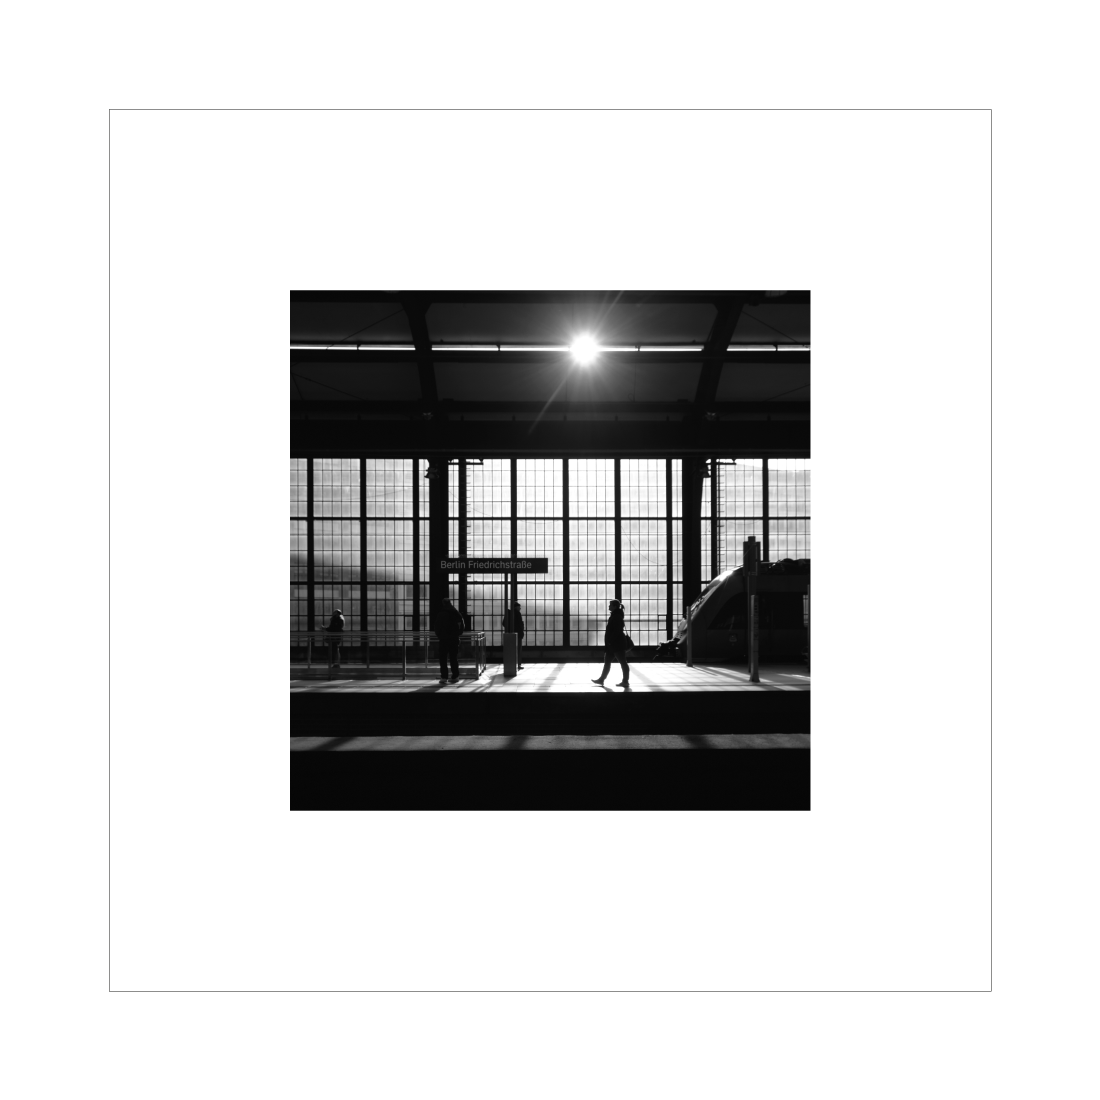 Kvadratisk sort-hvid fotokunst fra fotograferet iBerlin